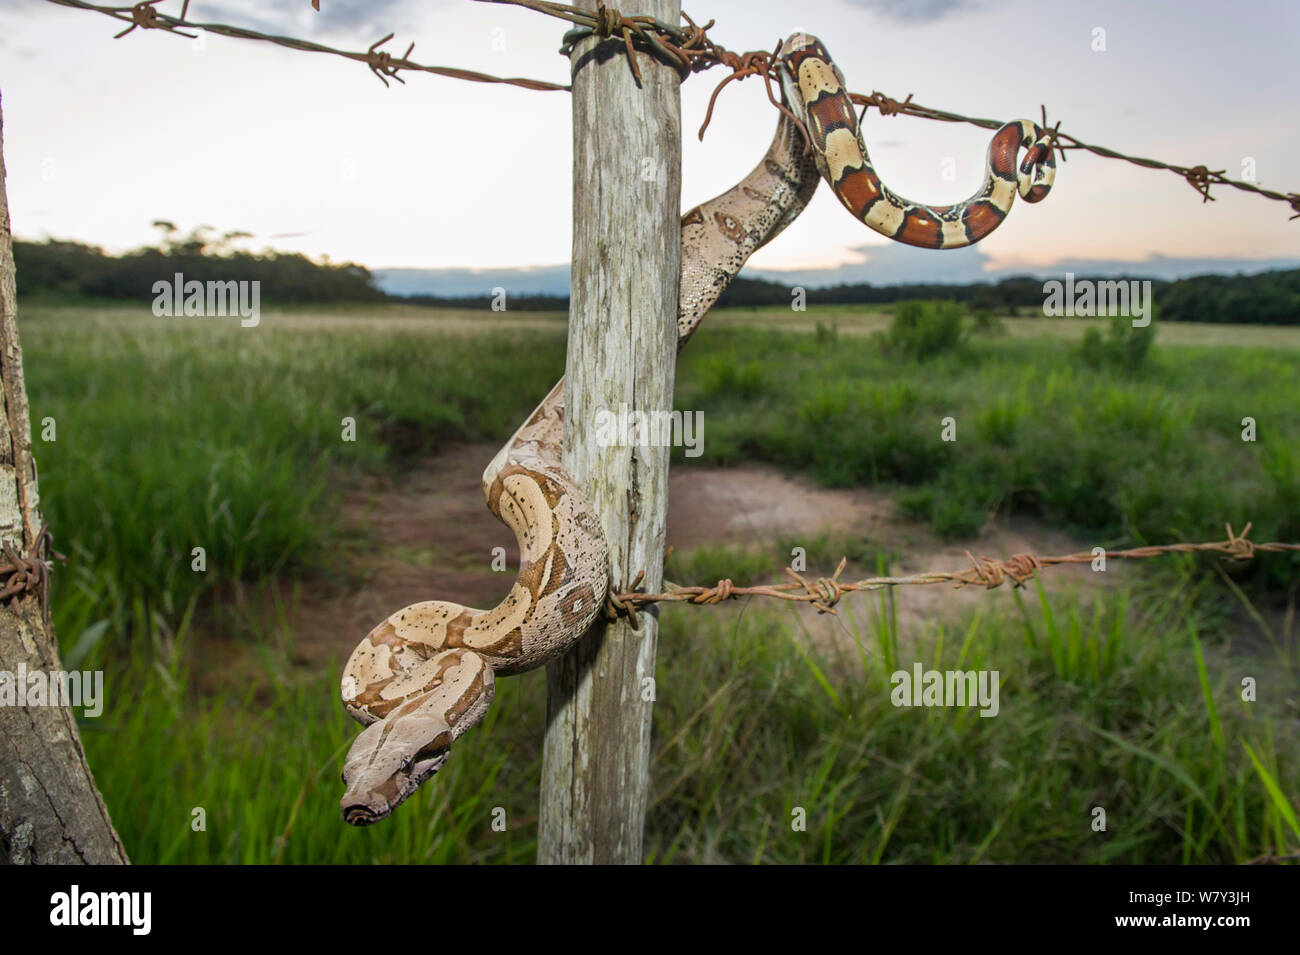 I capretti Rossa colombiana-tailed Boa Constrictor (Boa Constrictor constrictor) muovendosi lungo un filo spinato. Unamas Riserva e Ranch, Los Llanos, Colombia, America del Sud. Foto Stock